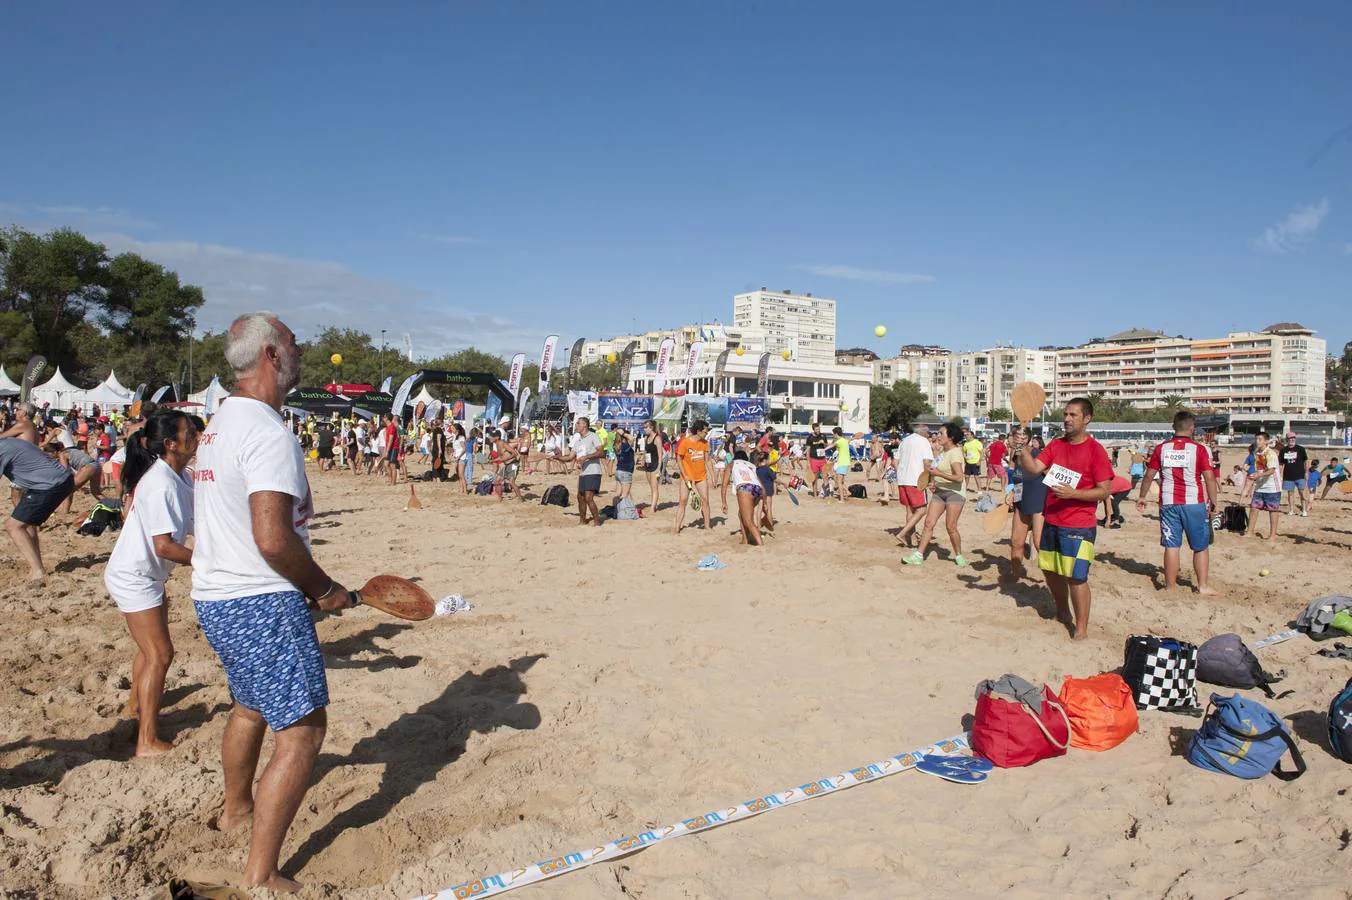 La segunda playa del Sardinero acoge el Campeonato Mundial Palas Santander 2017, en el que además de competir se trata de batir los récords mundiales de reunir a 2.000 personas jugando simultáneamente durante 80 horas seguidas.